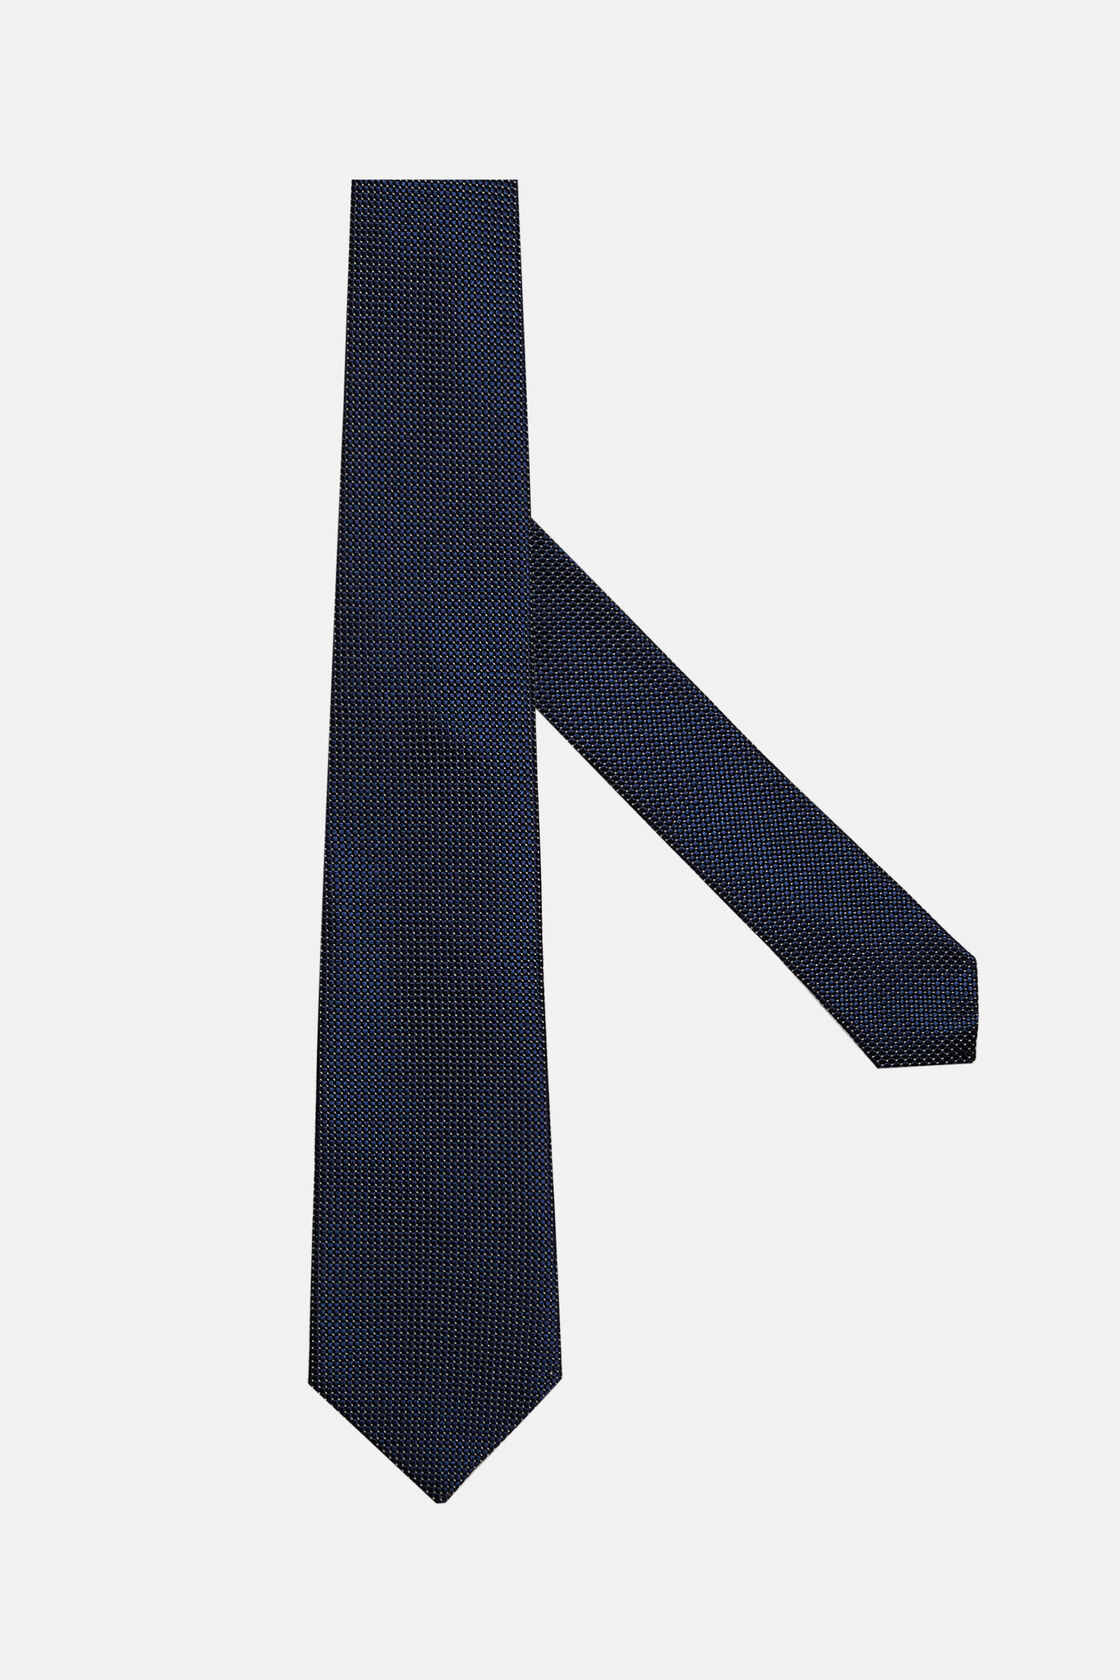 Mikromintás nyakkendő selyemkeverékből, Navy blue, hi-res